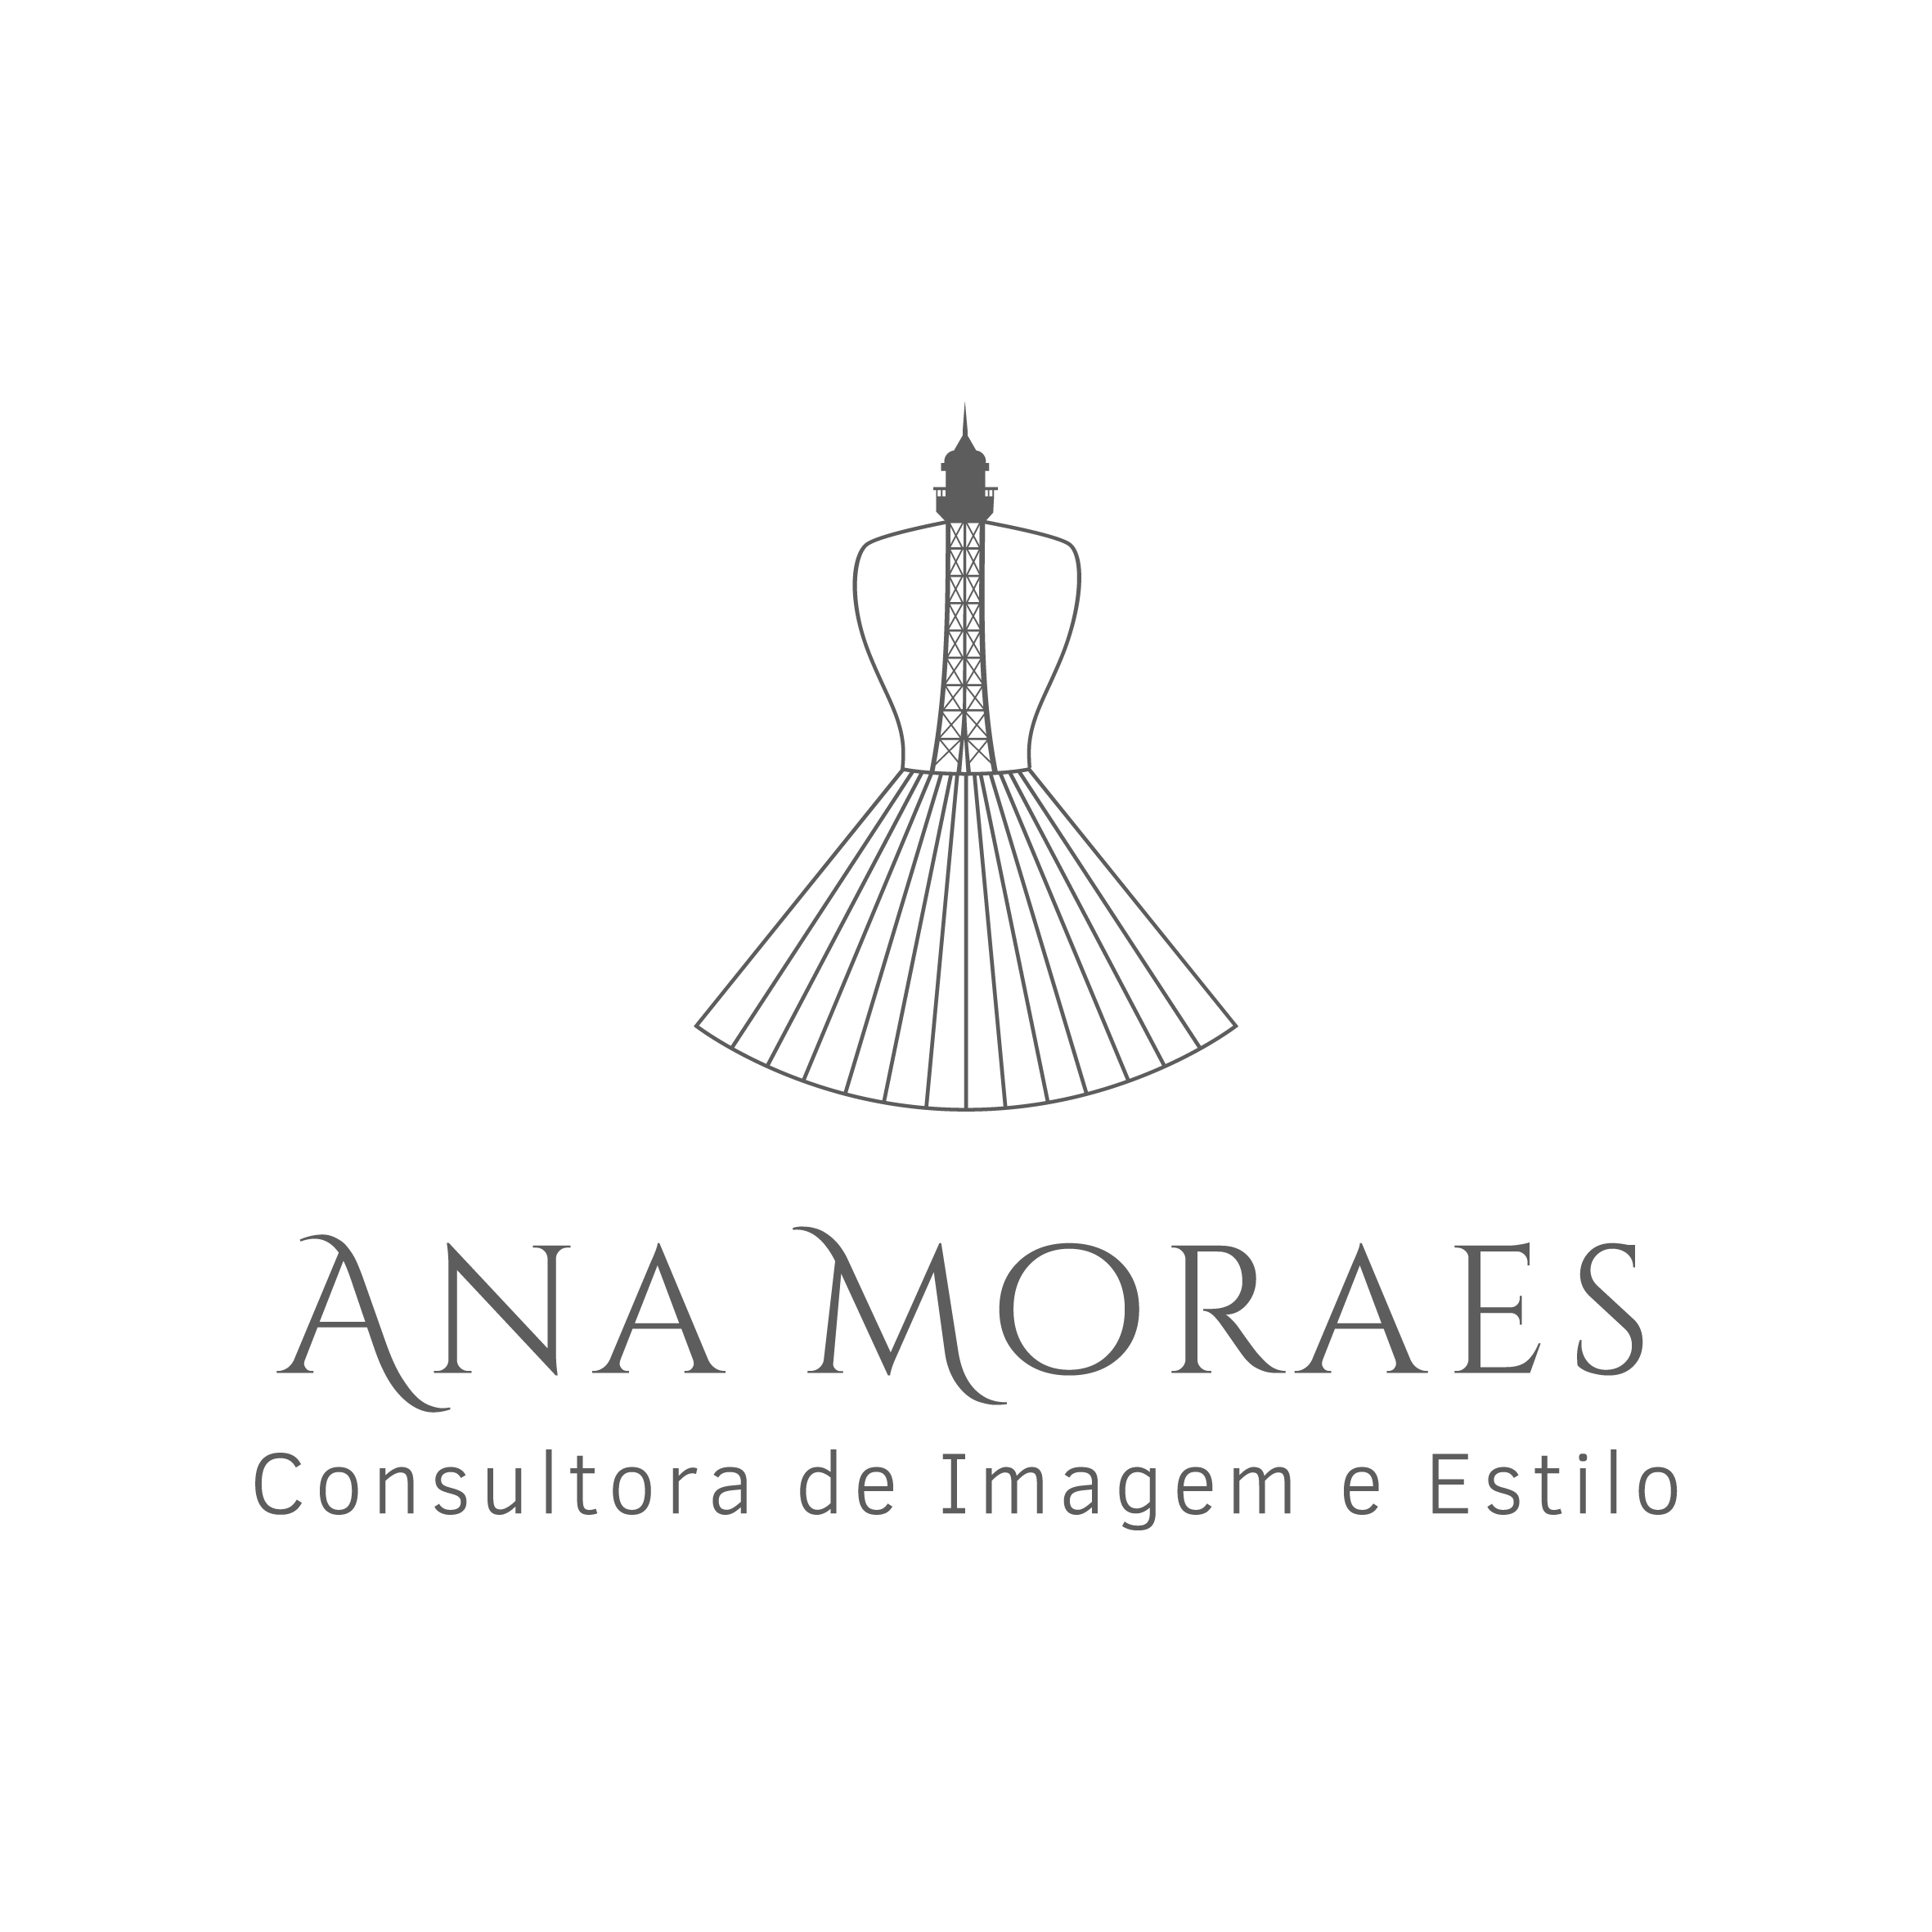 Ana Moraes Consultoria